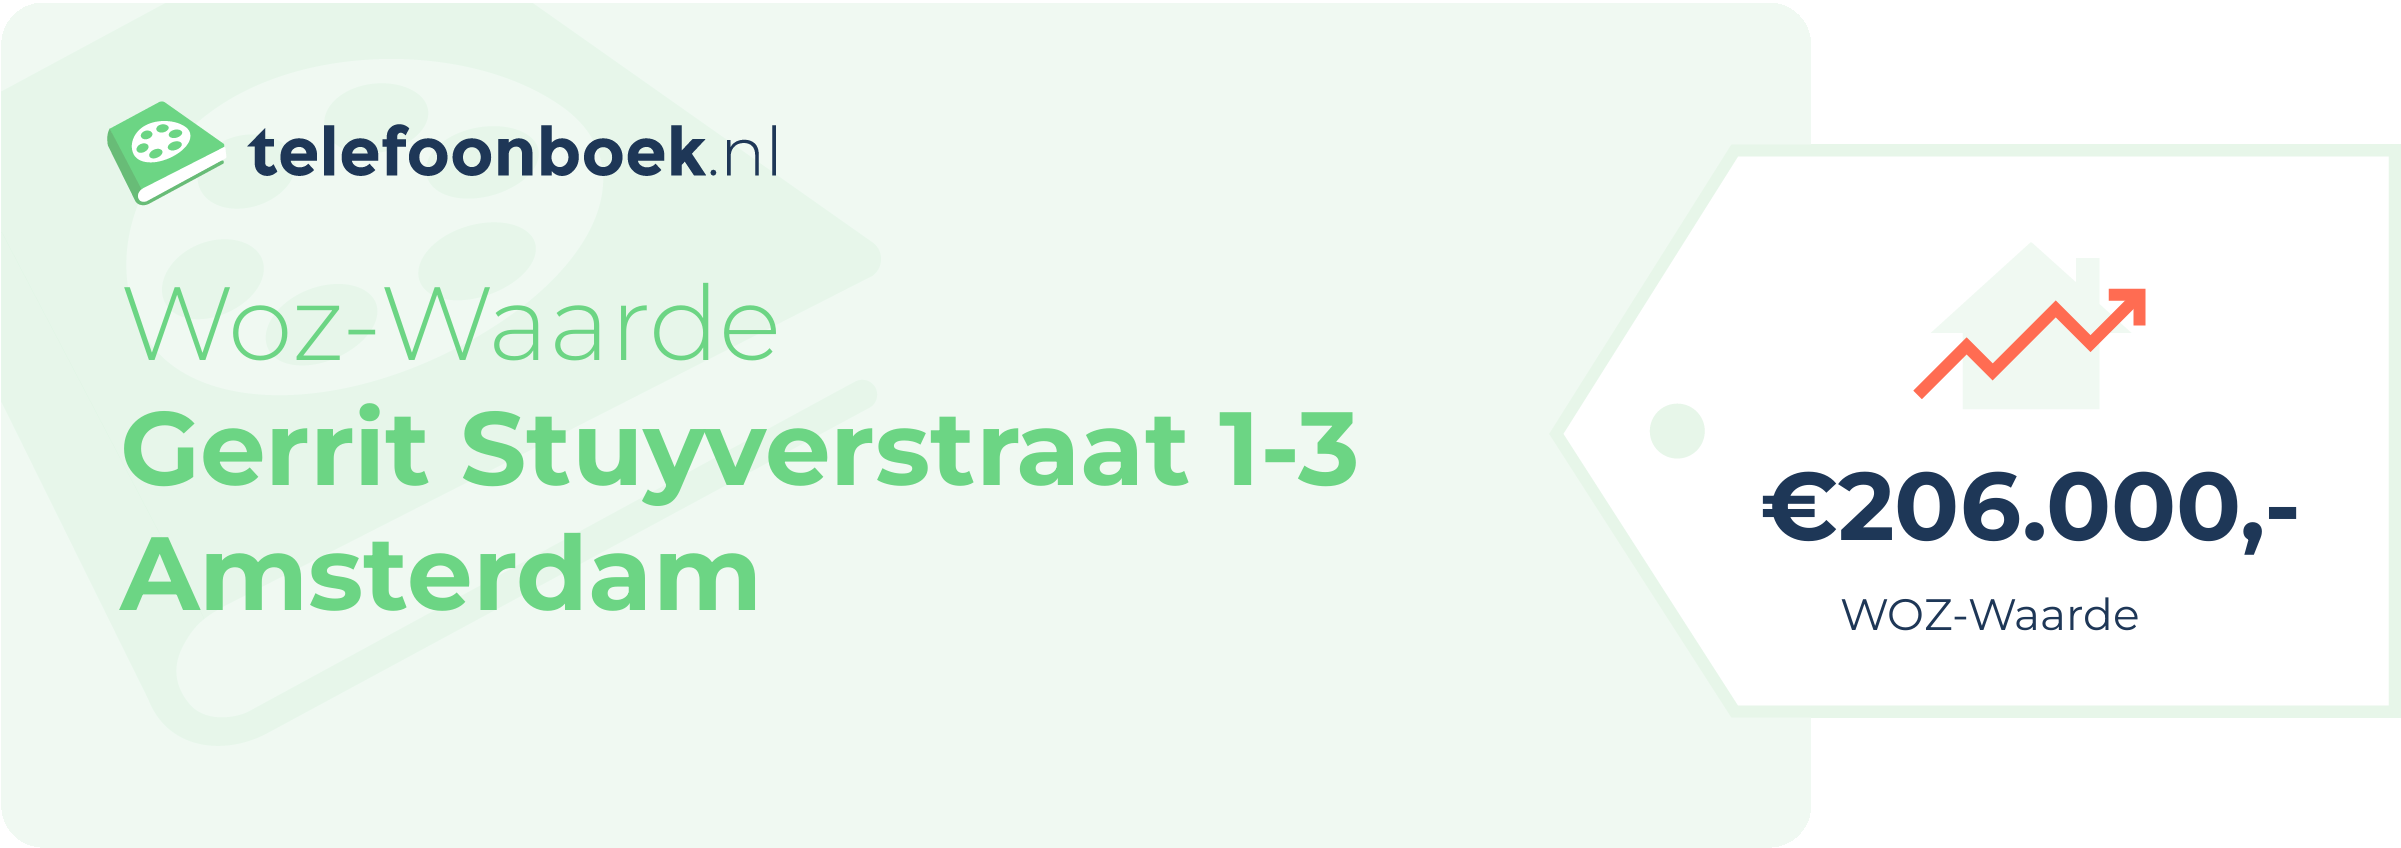 WOZ-waarde Gerrit Stuyverstraat 1-3 Amsterdam